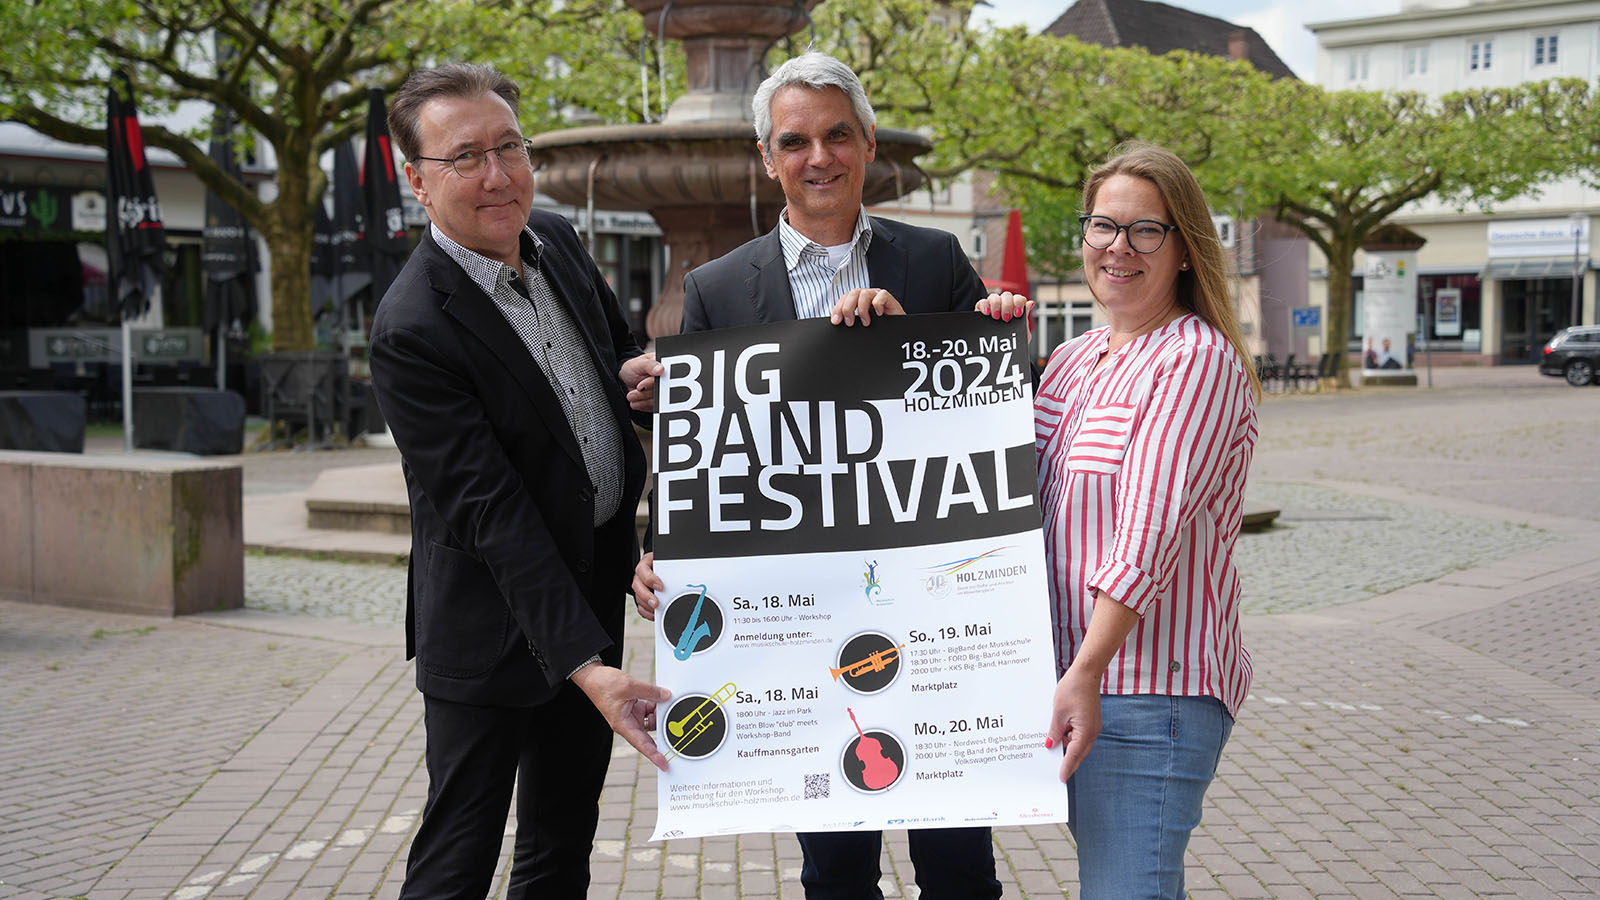 Zeit für die großen Bands: Das 6. Big Band Festival steht vor der Tür